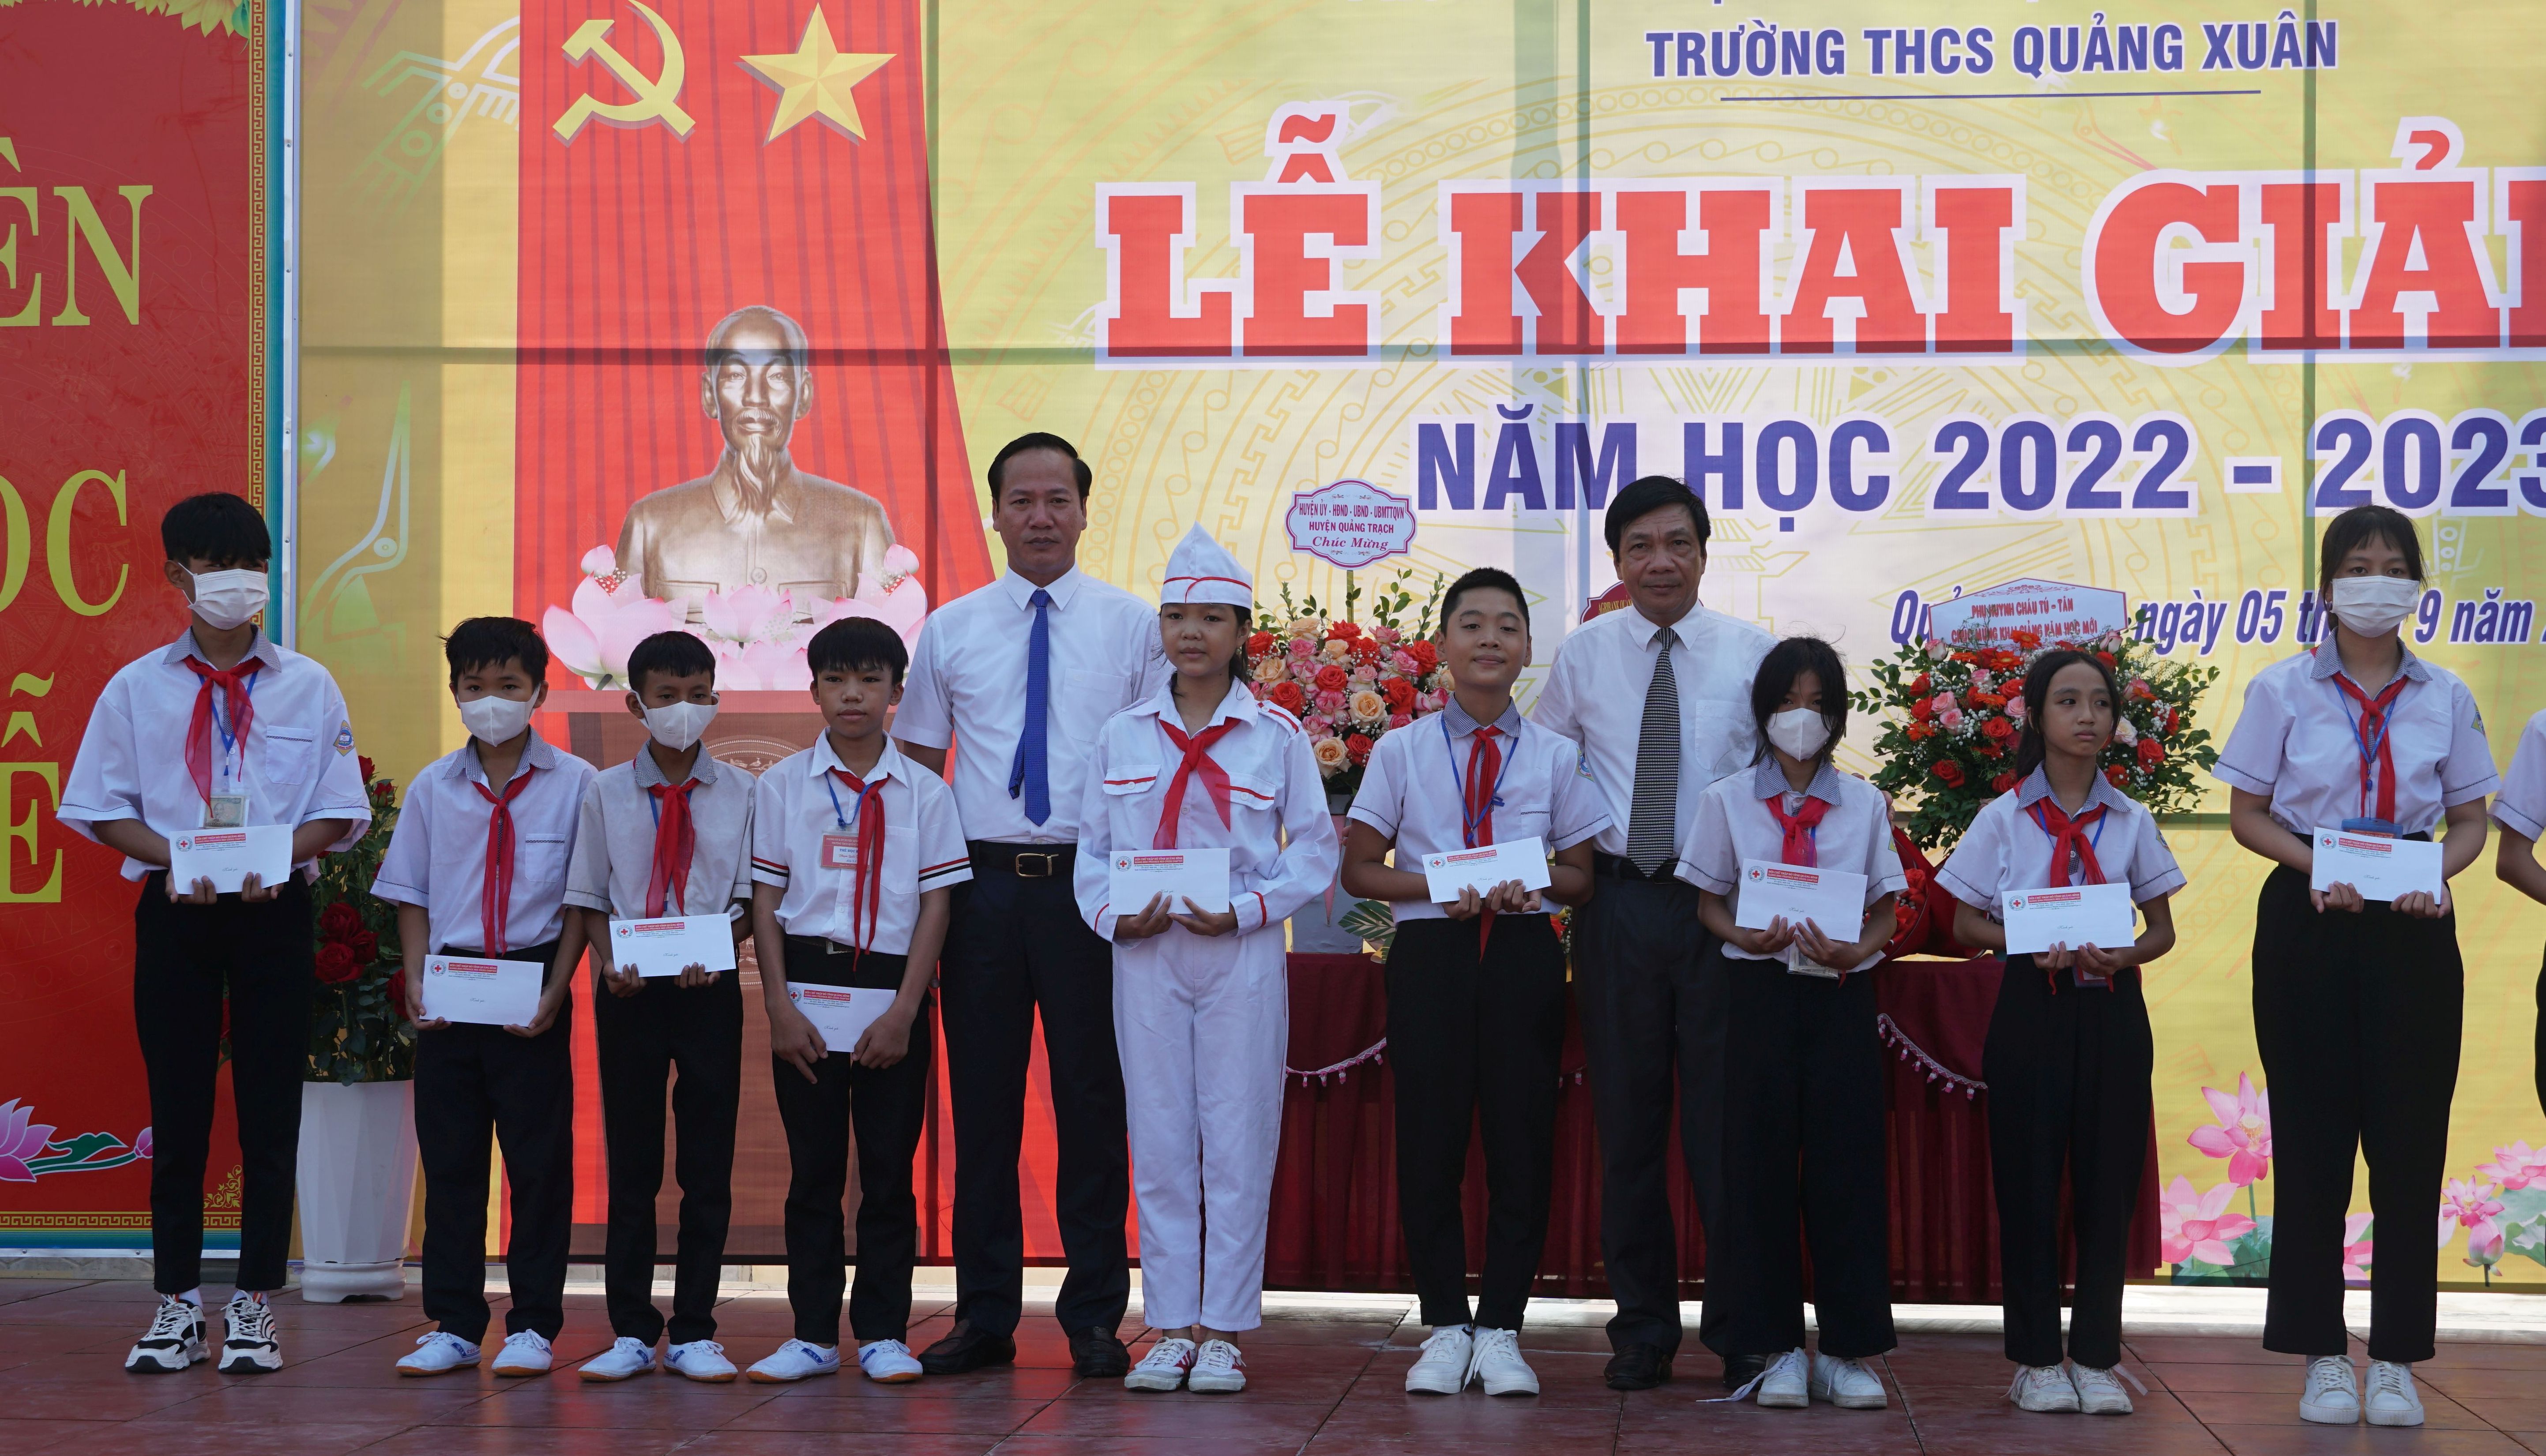 Đồng chí Phó Chủ tịch Thường trực HĐND tỉnh Nguyễn Công Huấn và đồng chí Bí thư Huyện ủy Quảng Trạch Nguyễn Xuân Đạt trao học bổng cho các em học sinh ở Trường THCS Quảng Xuân.